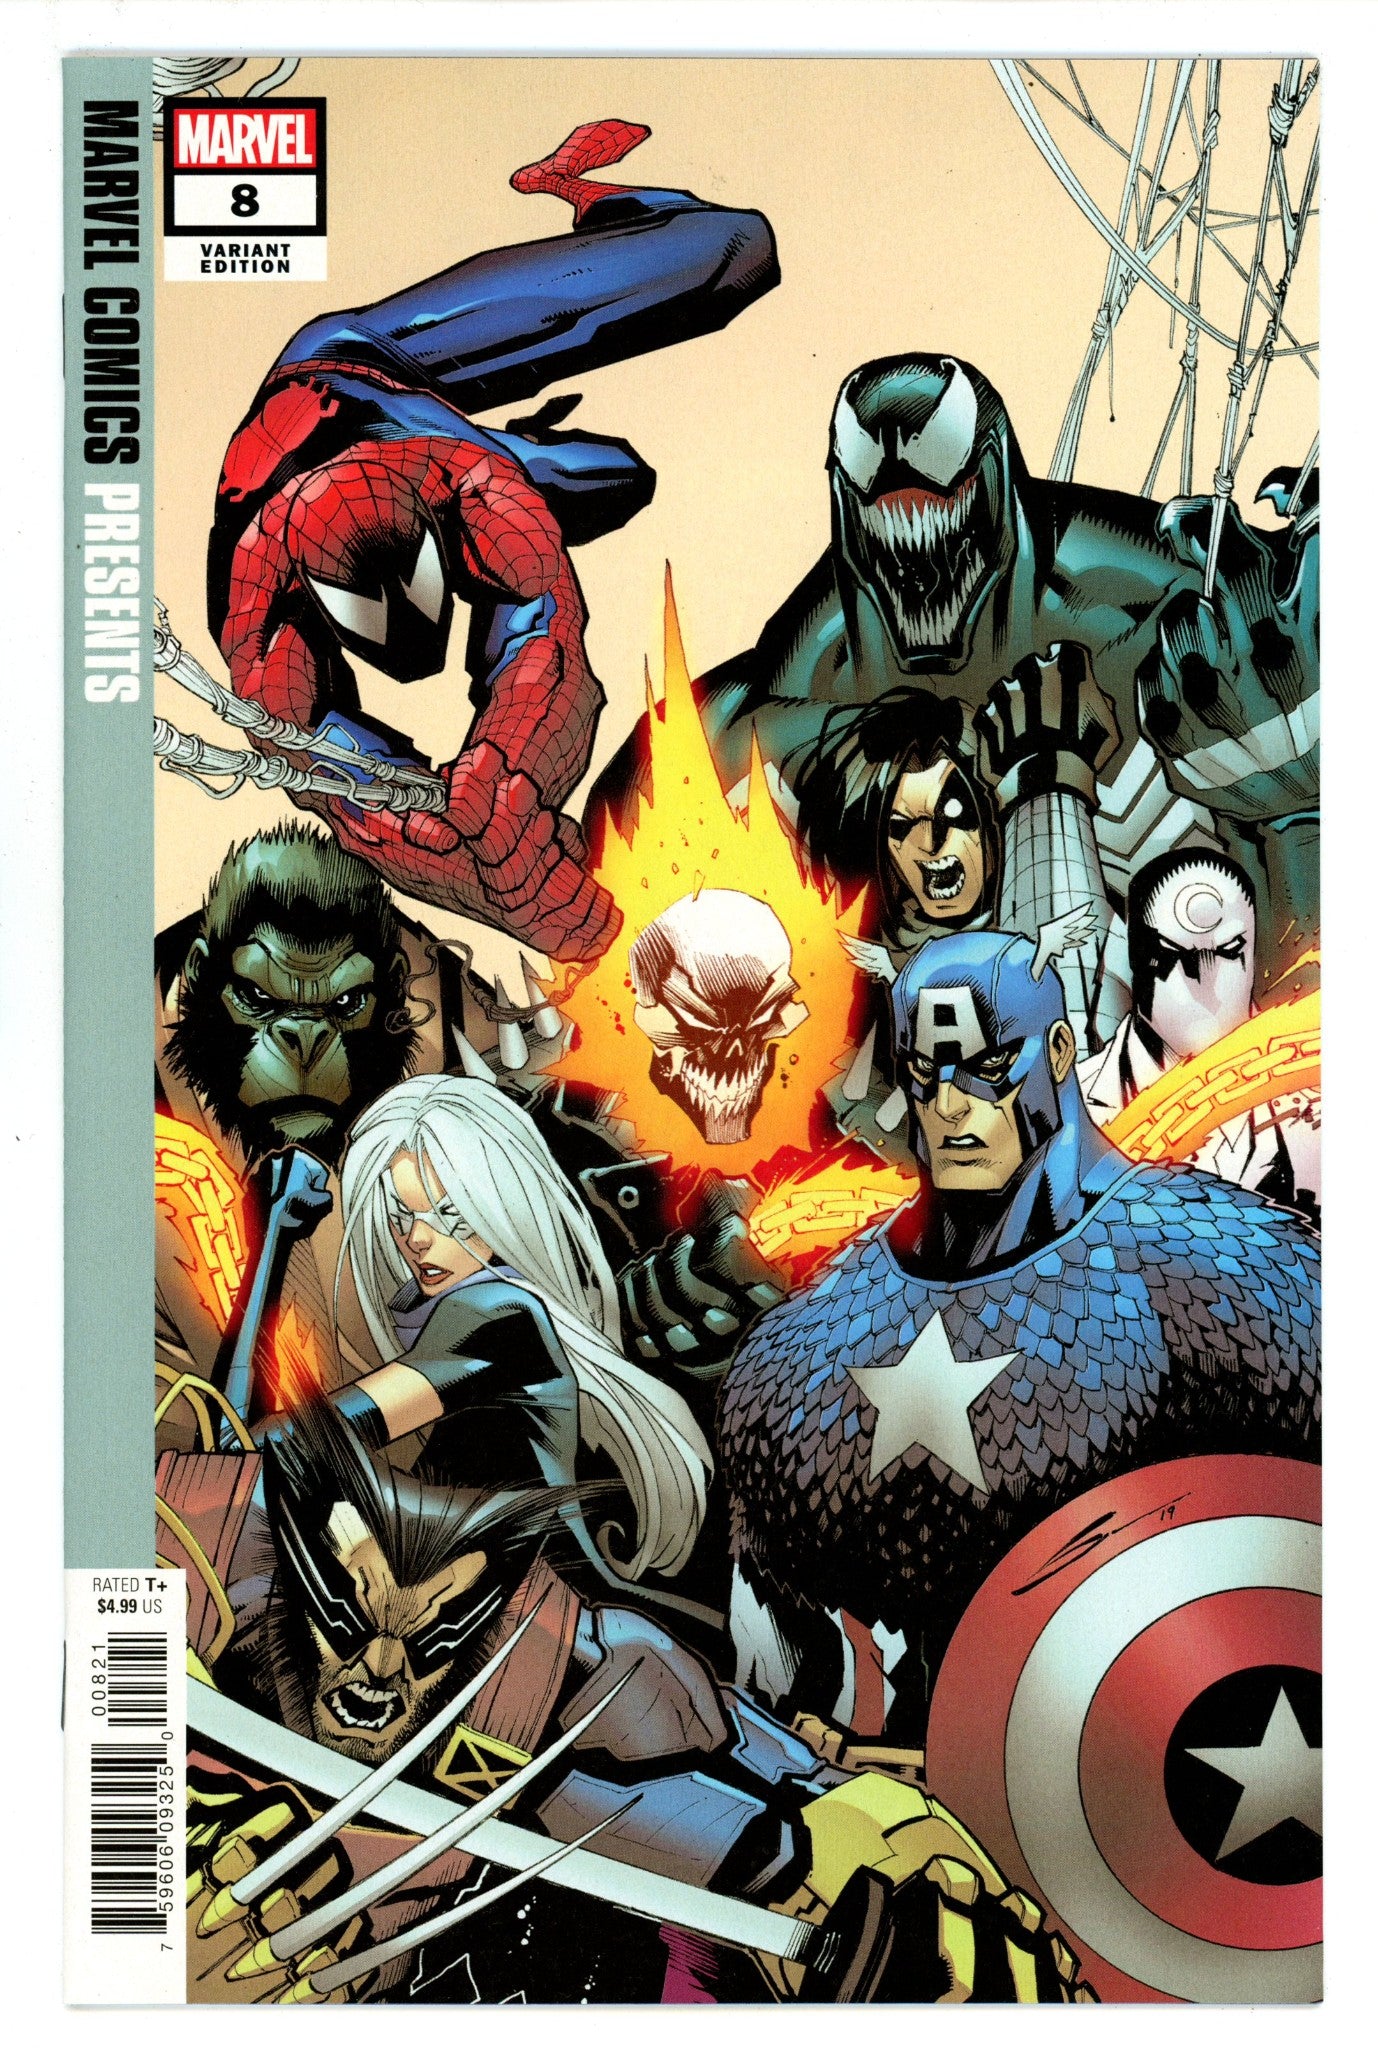 Marvel Comics Presents Vol 3 8 High Grade (2019) Sandoval Variant 